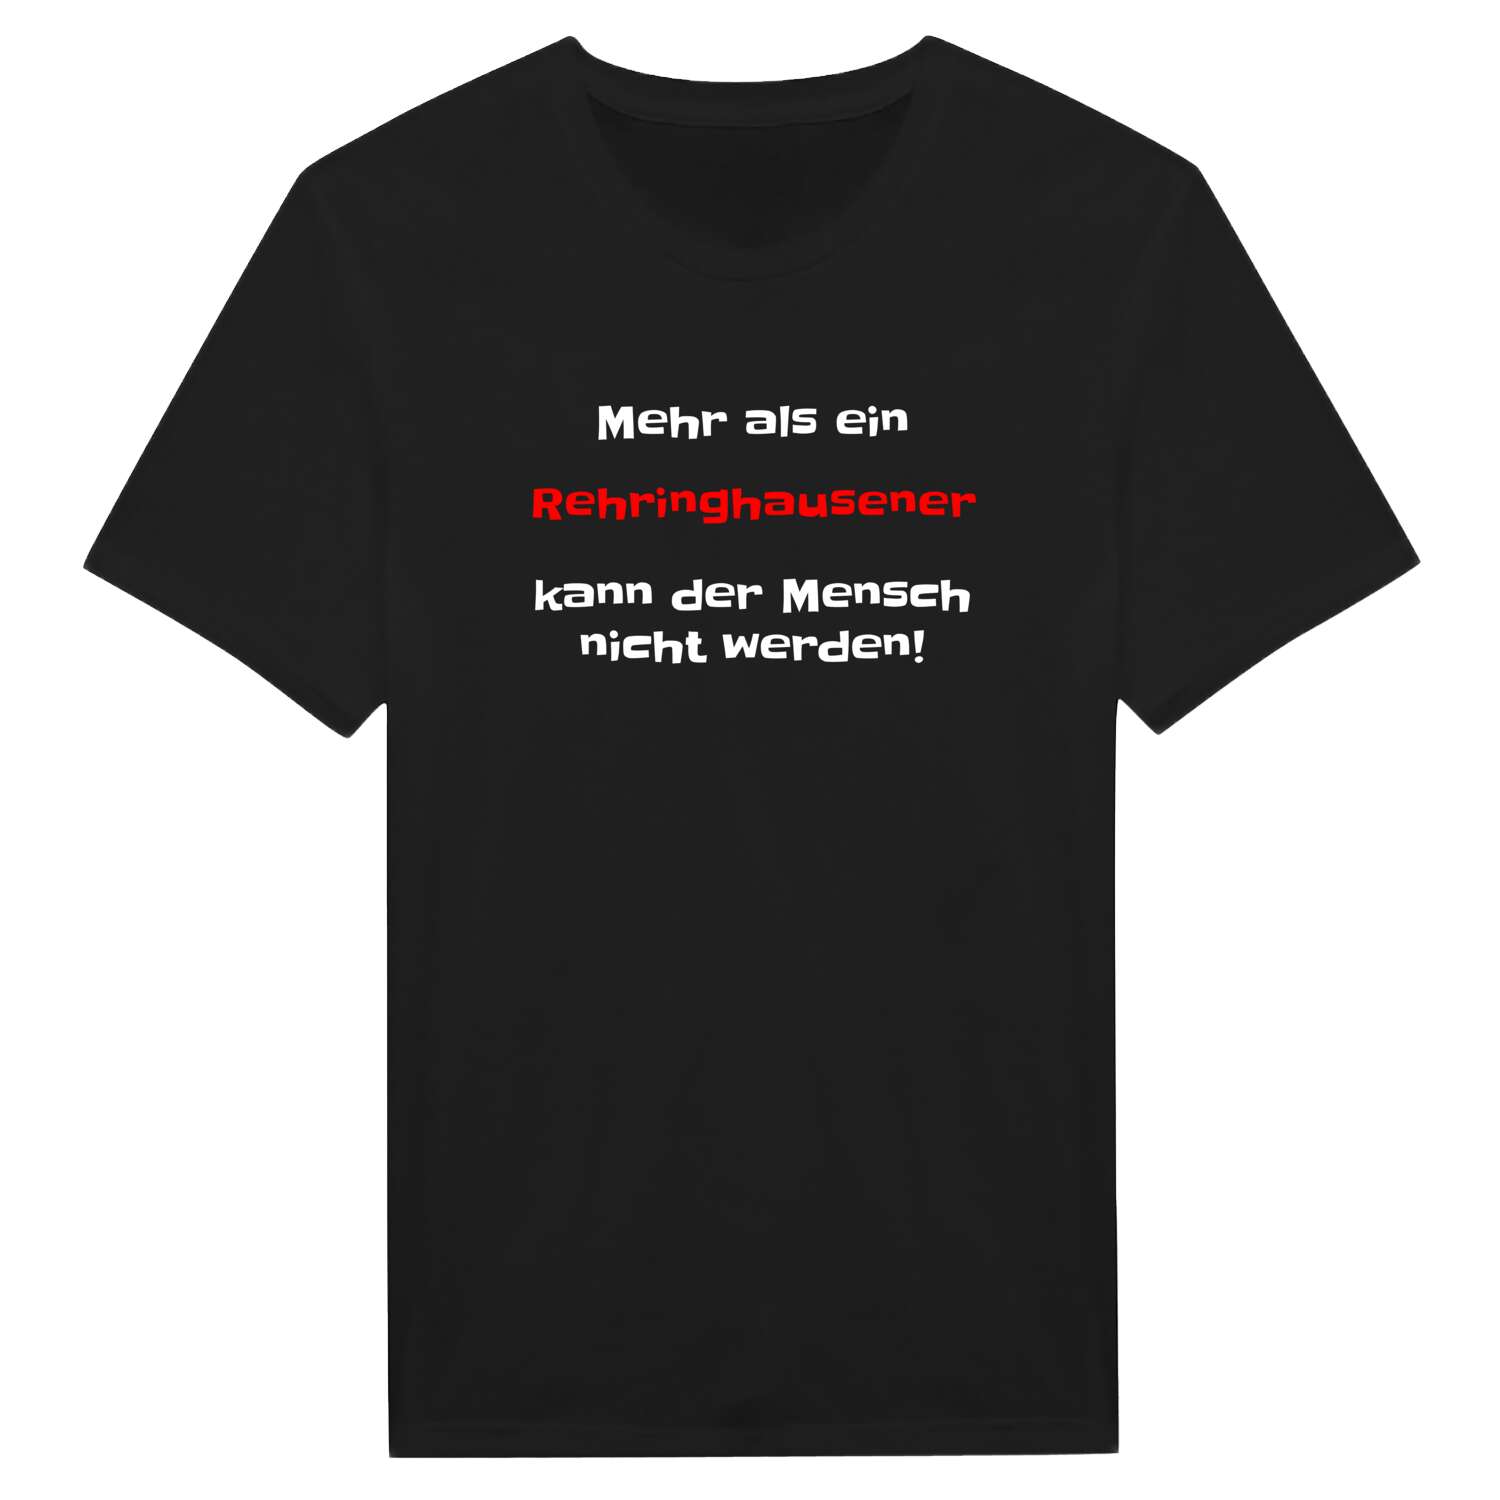 Rehringhausen T-Shirt »Mehr als ein«